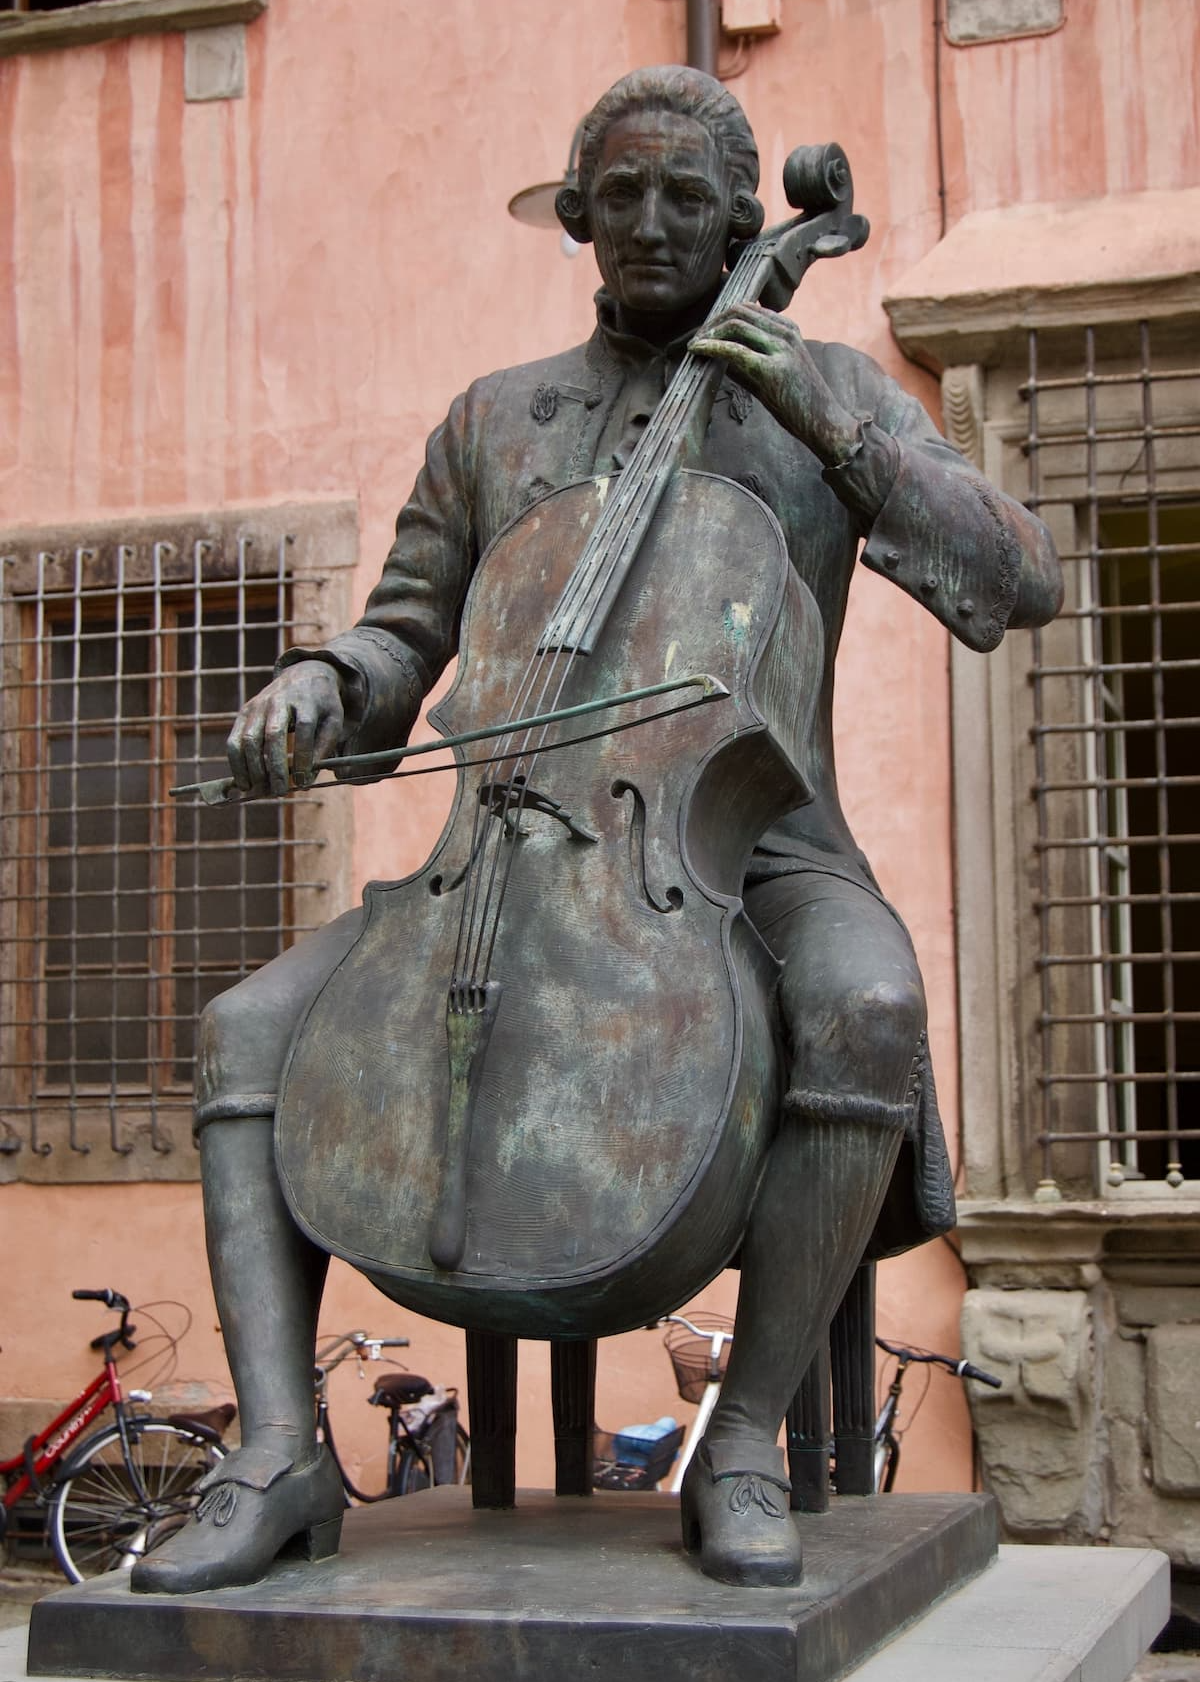 바이올린을 연주하고 있는 루이지 보케리니 동상이 있는 이미지입니다.